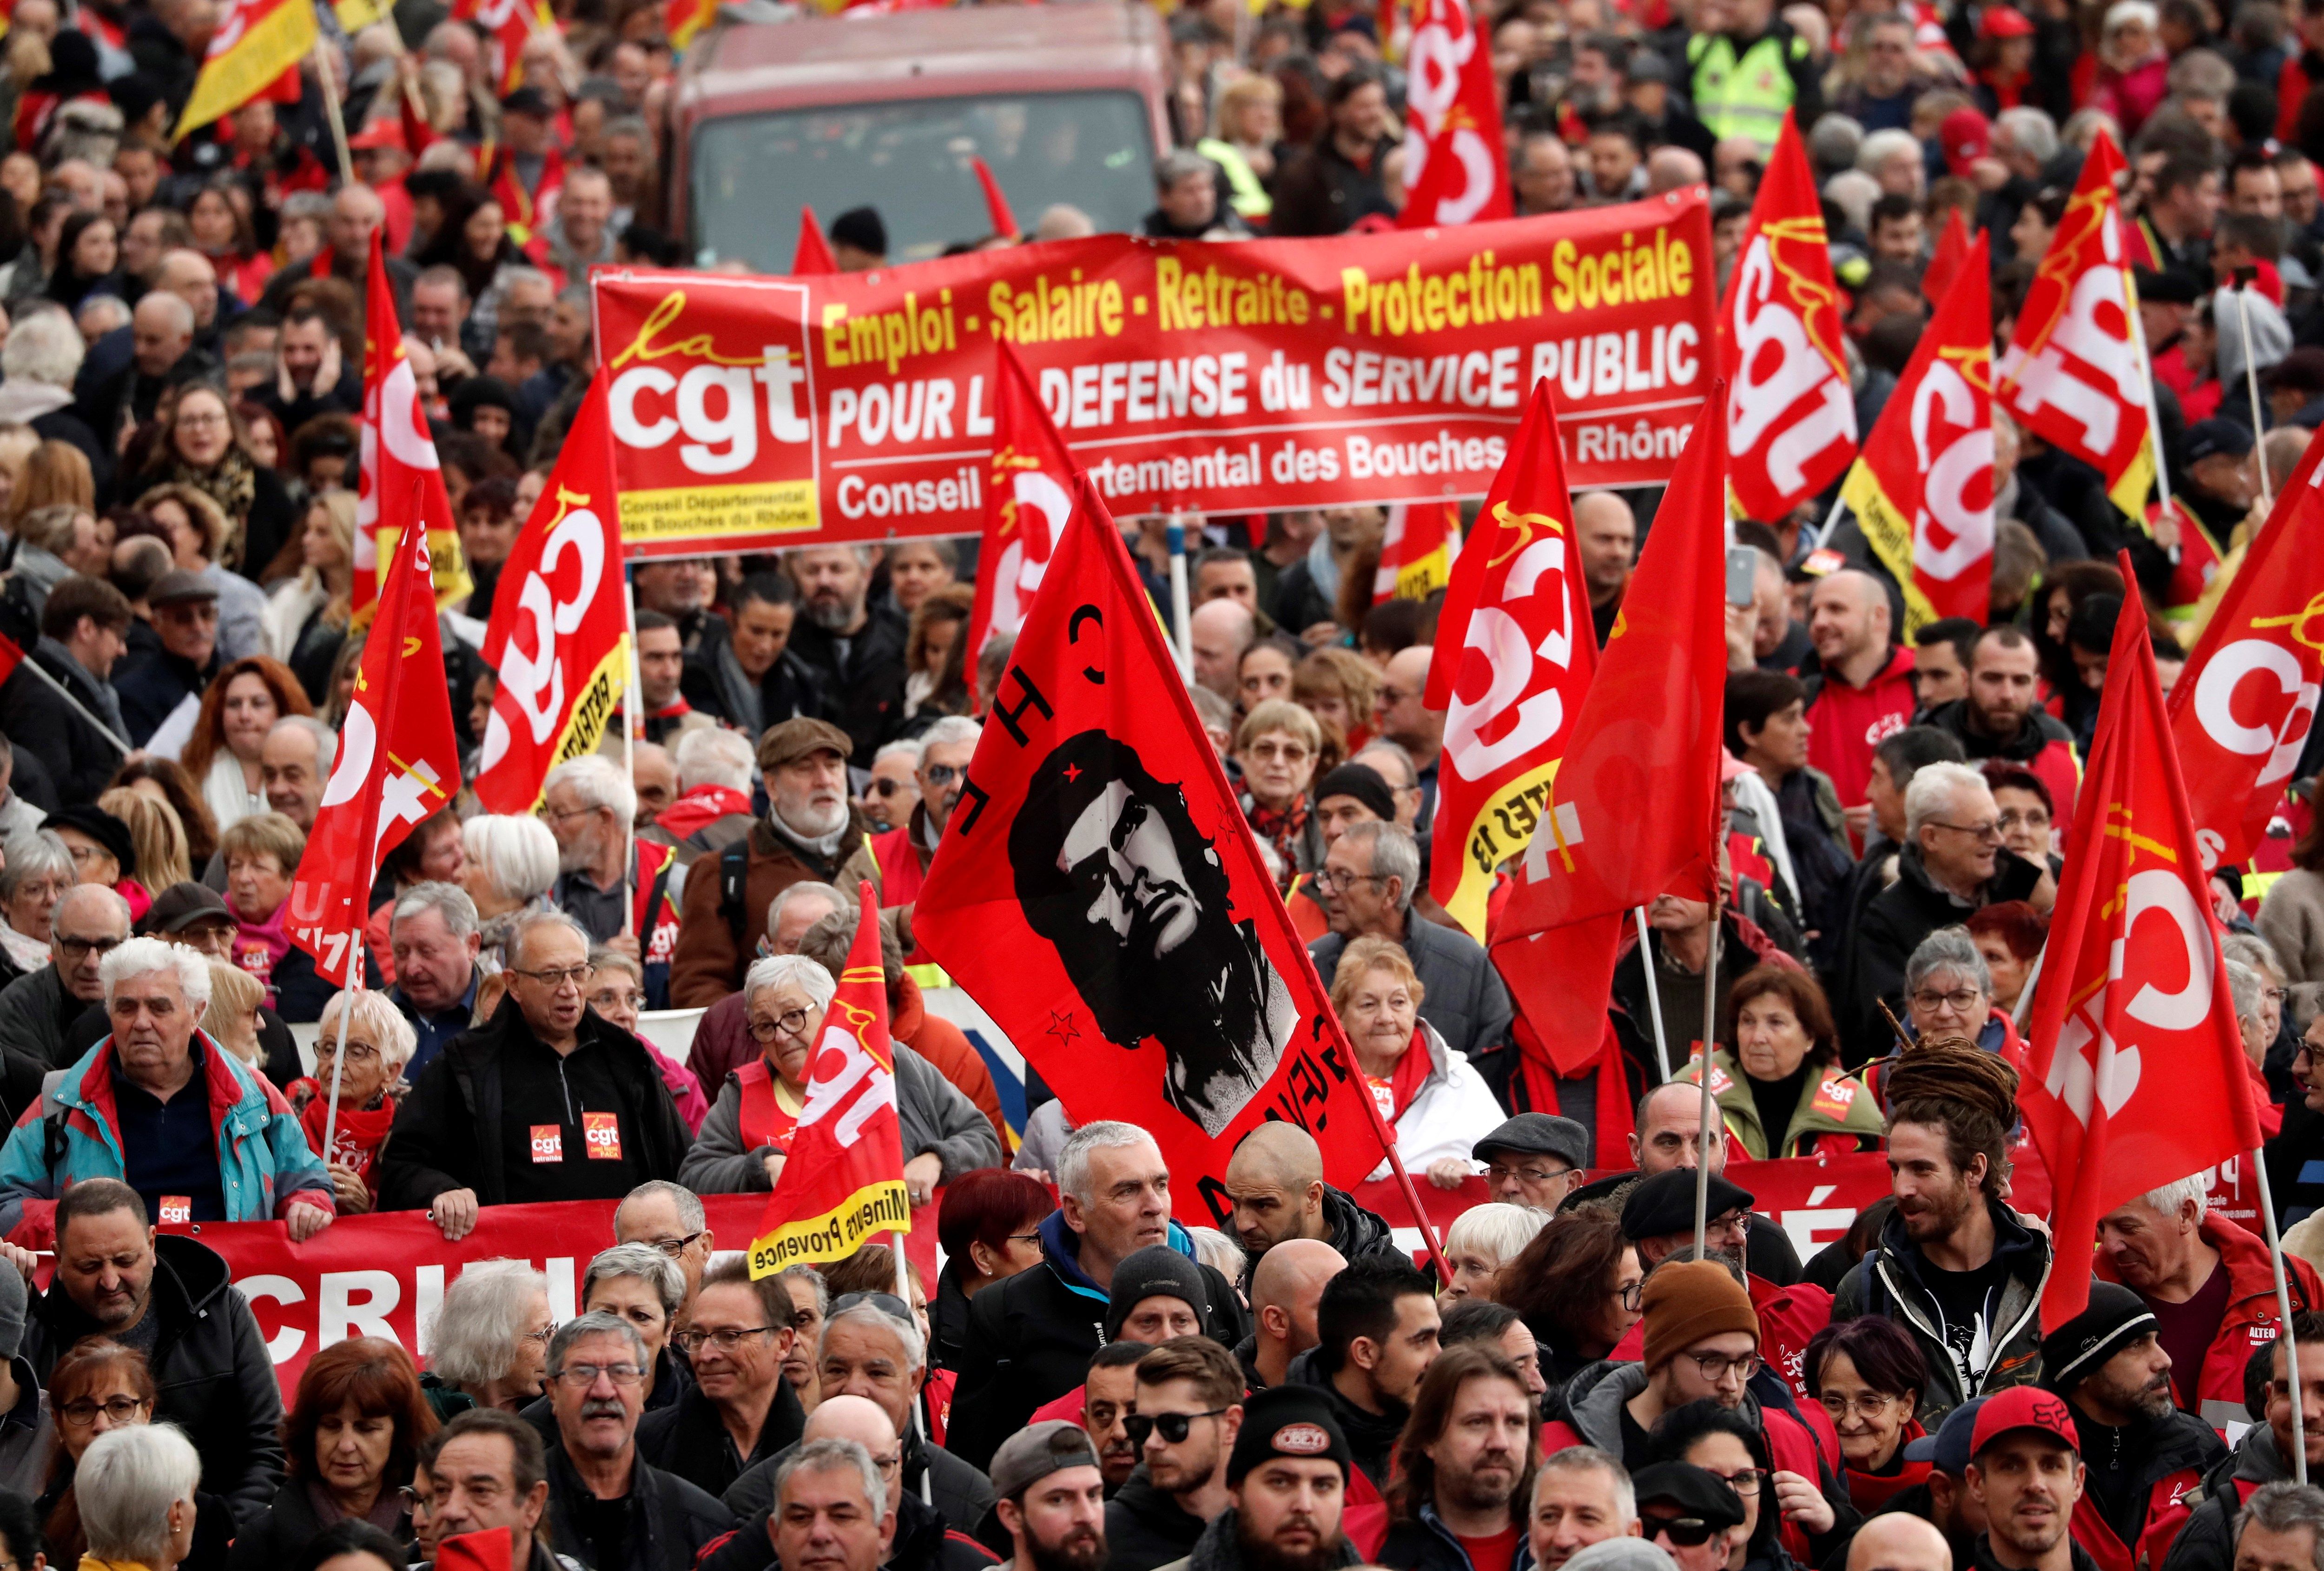 Empleados de empresas públicas y privadas sostienen pancartas durante una manifestación en el marco de la huelga general francesa contra la reforma de las pensiones. (Foto Prensa Libre: EFE)